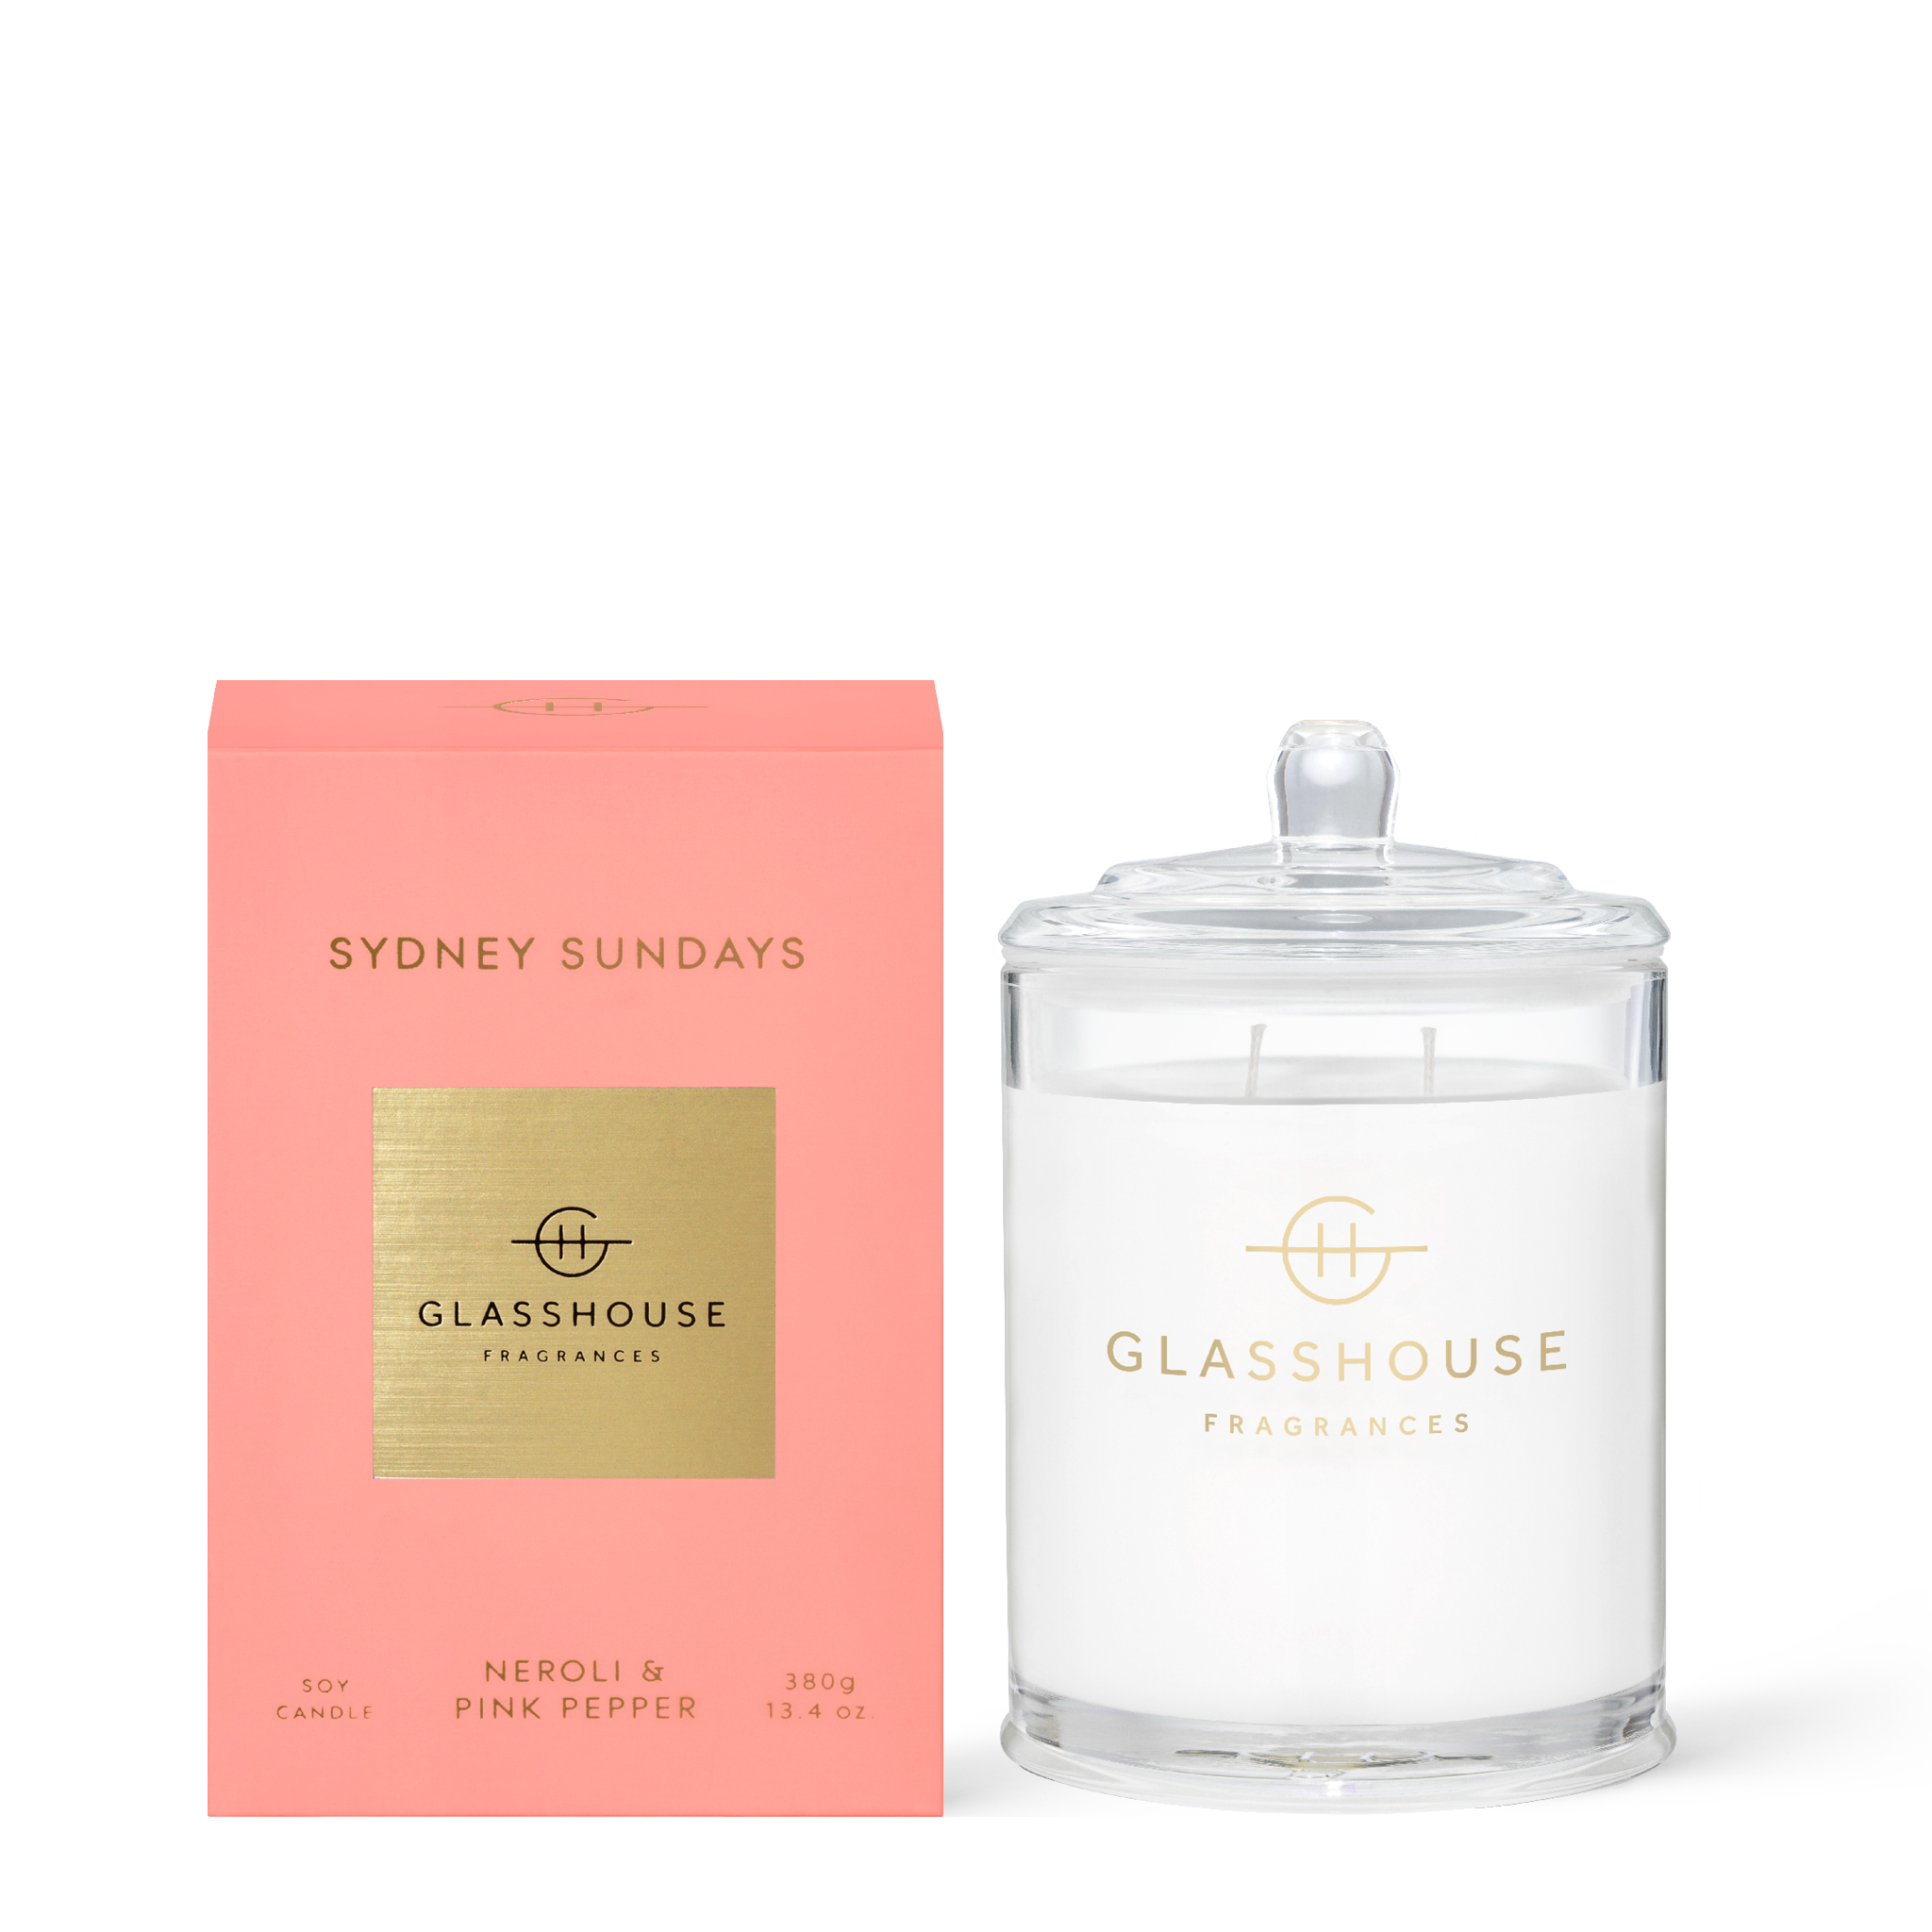 Glasshouse Fragrances Sydney Sundays Neroli and Pink Pepper 380g Soy Candle with box